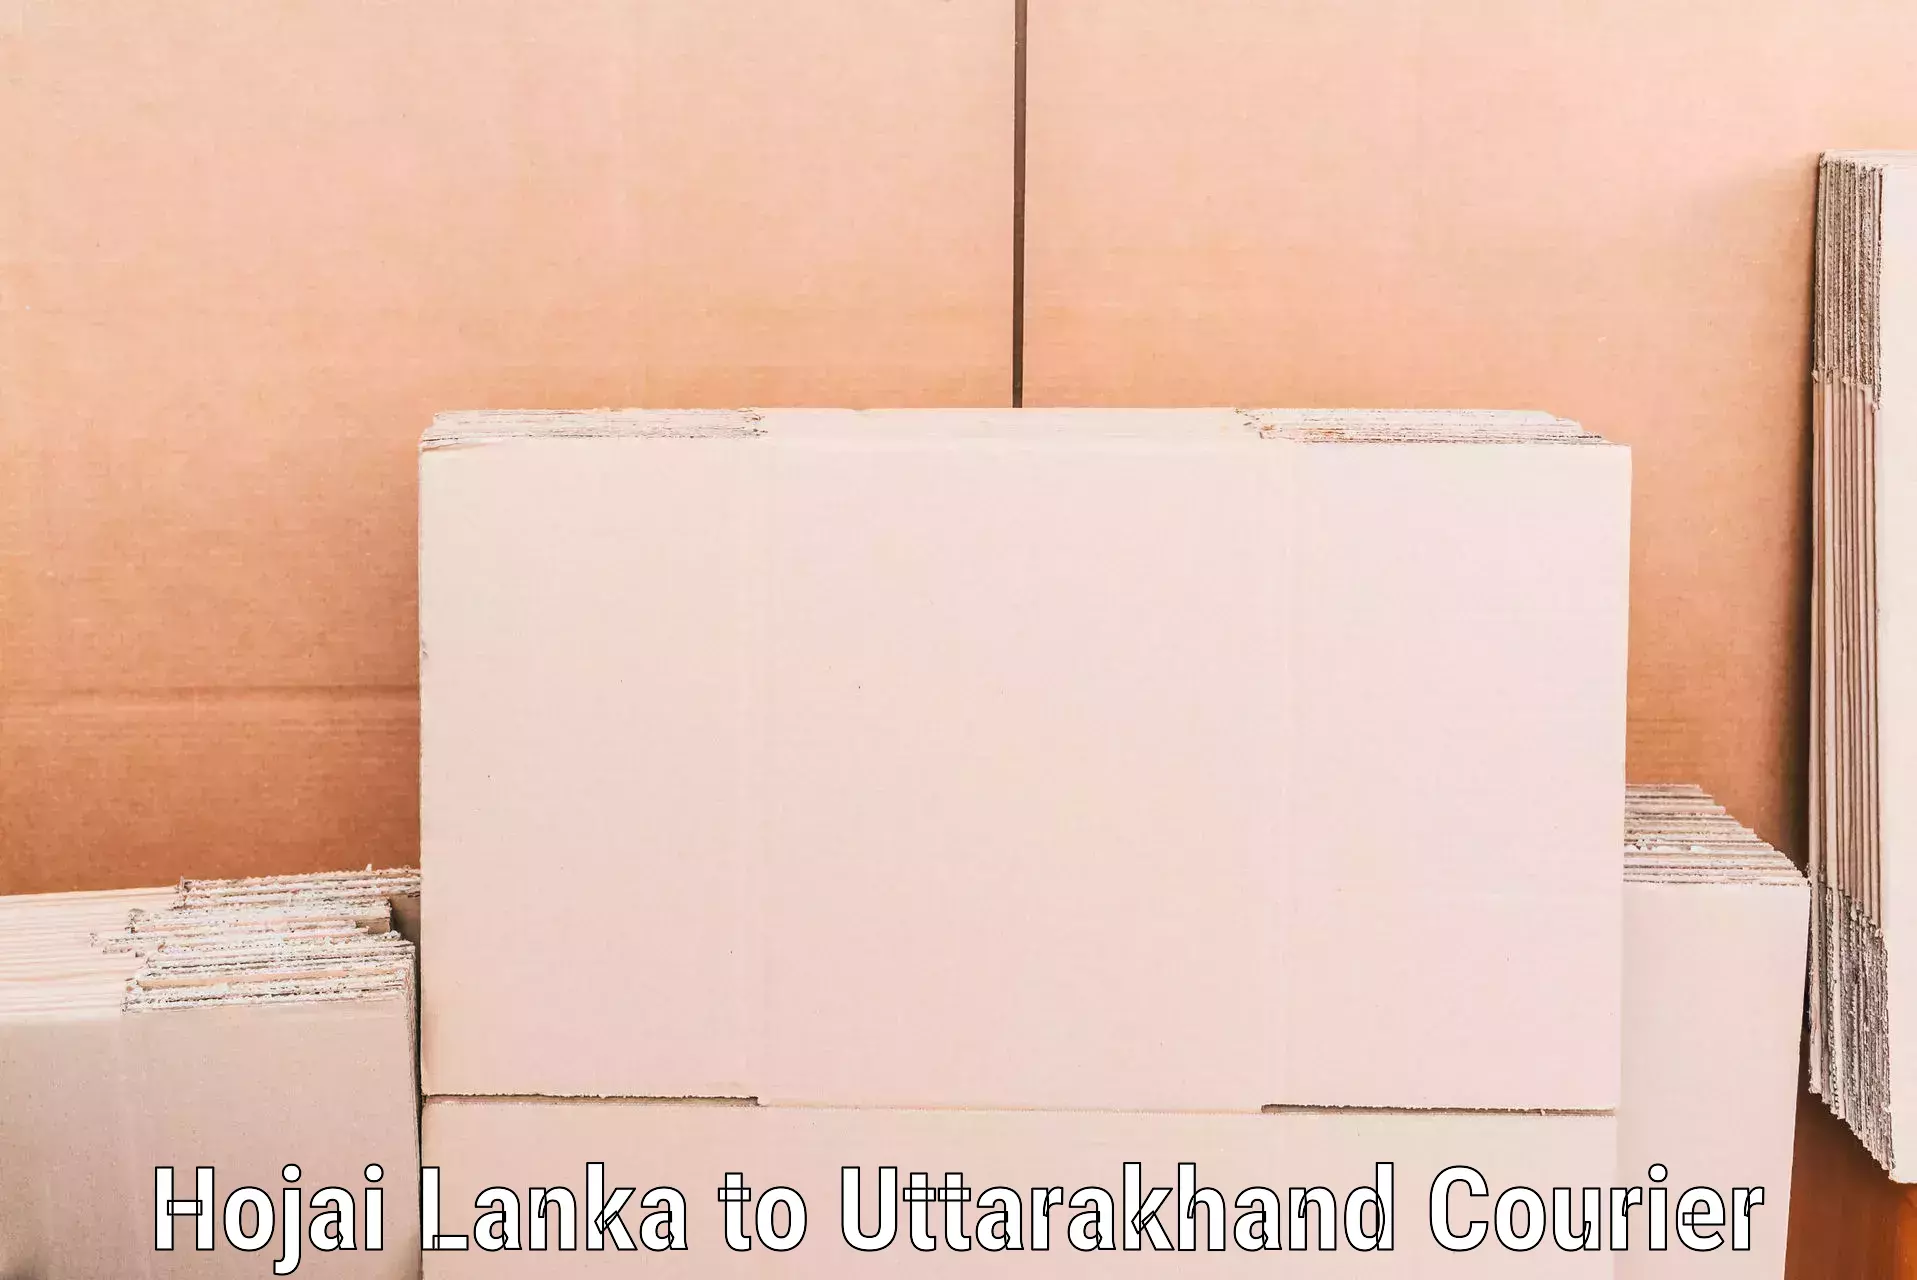 Flexible moving solutions Hojai Lanka to Uttarakhand